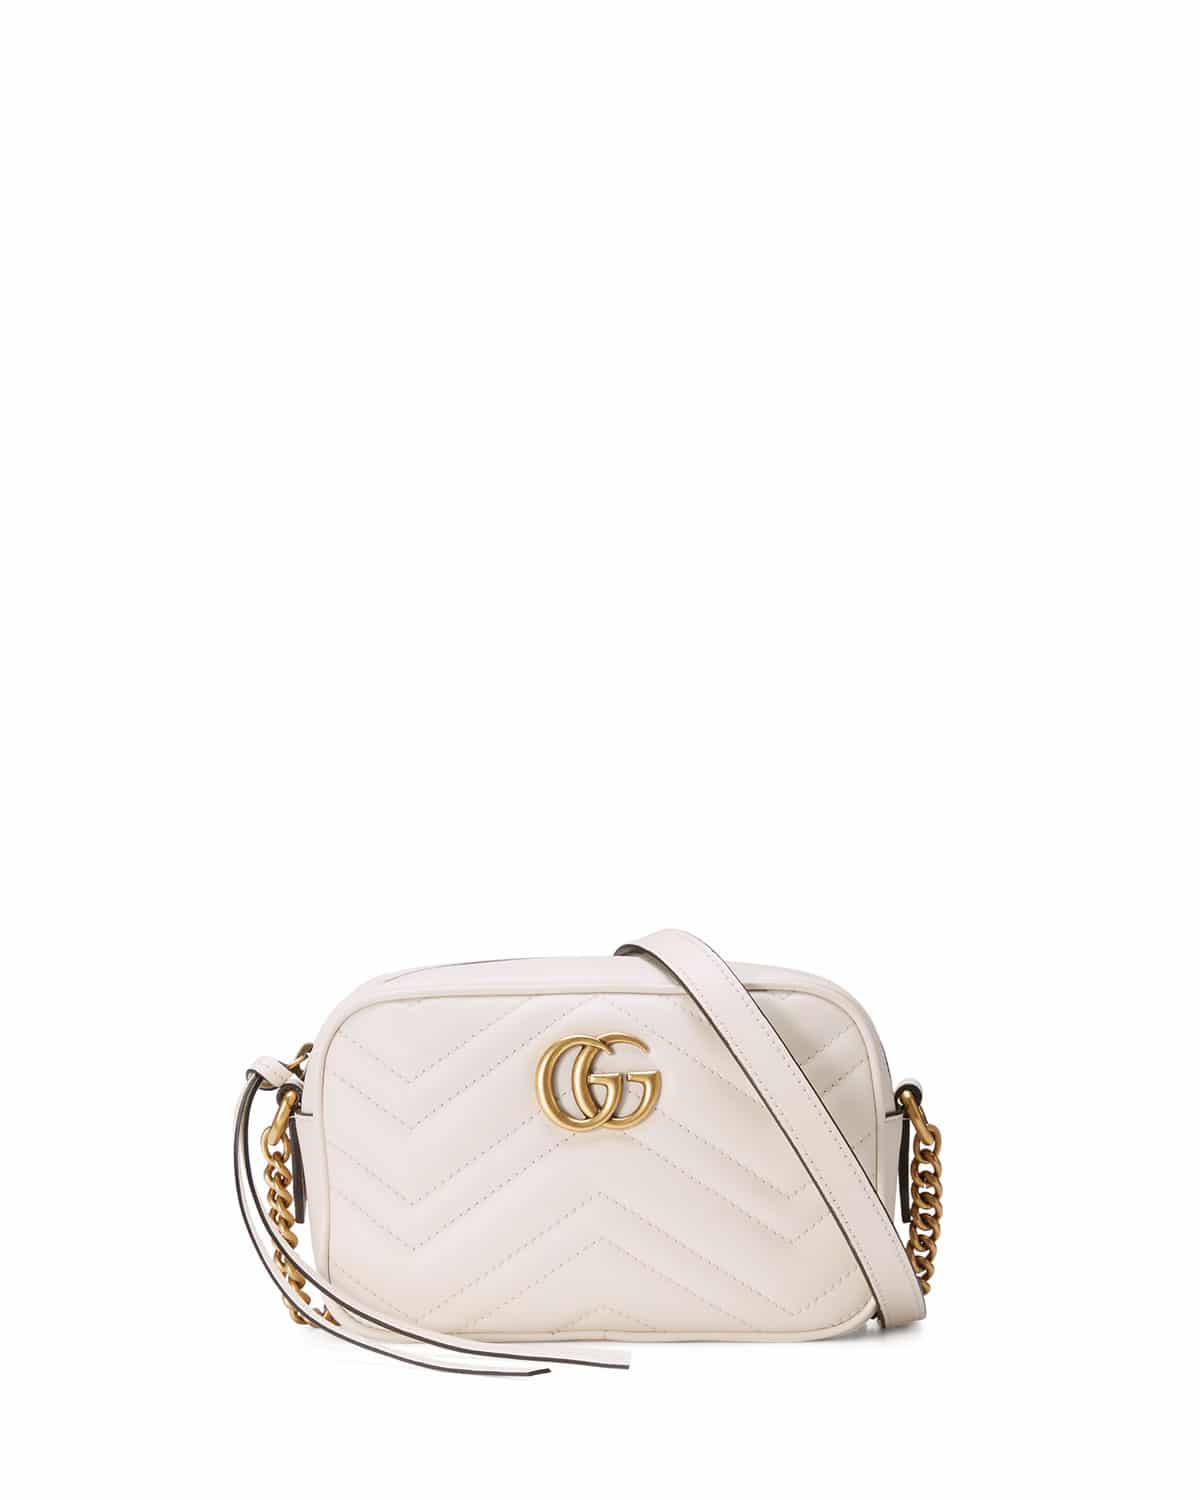 white gucci purse on sale